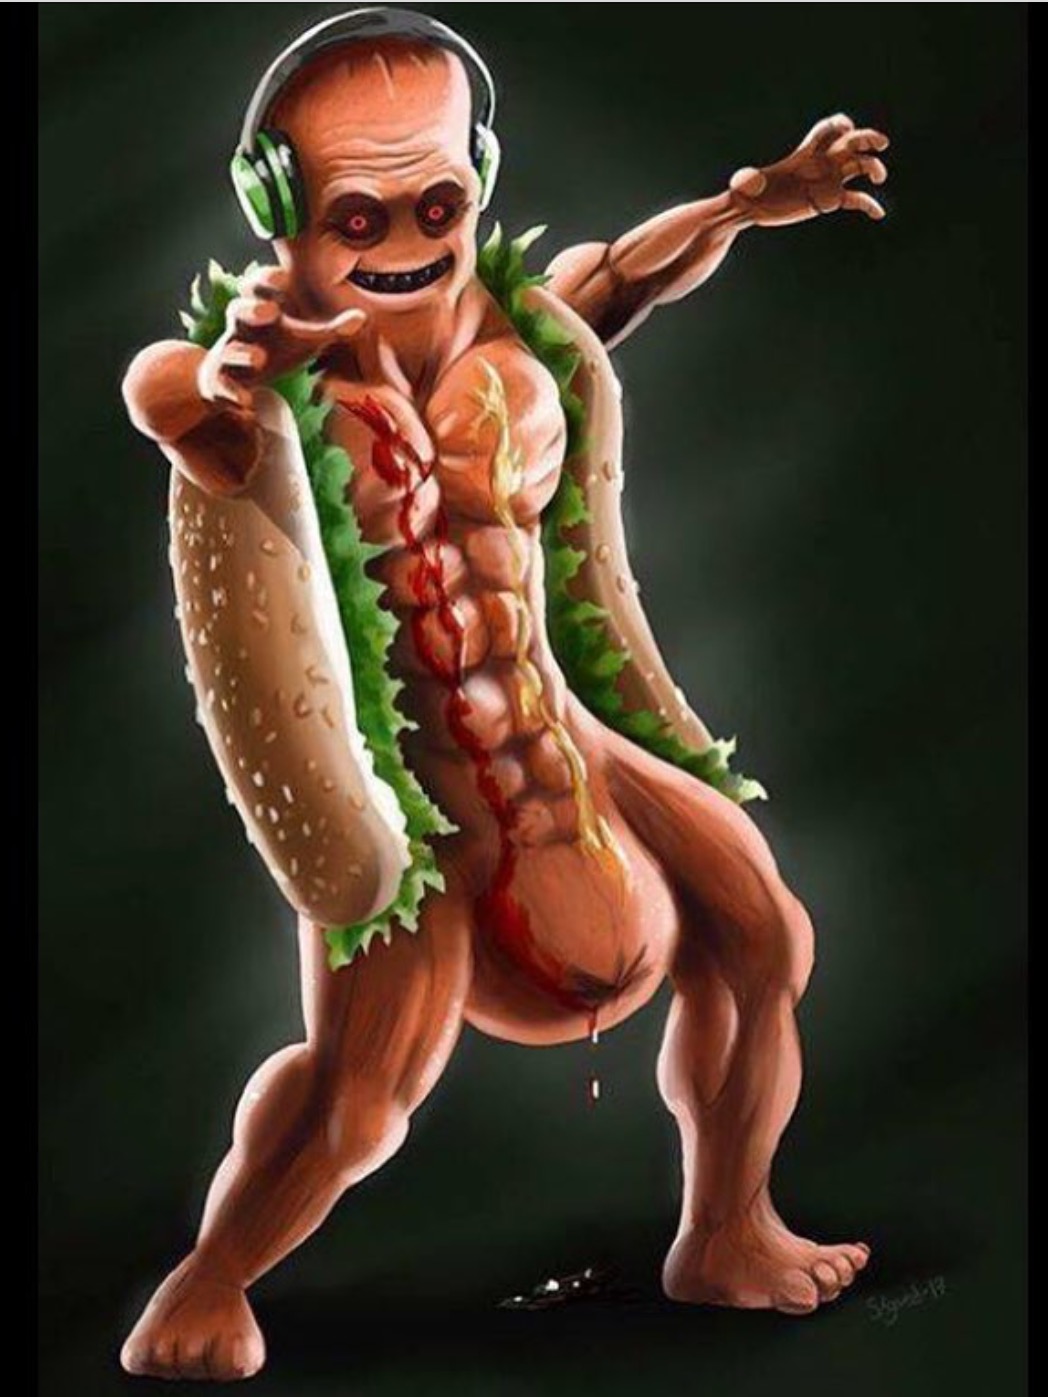 Dick hot dog ben